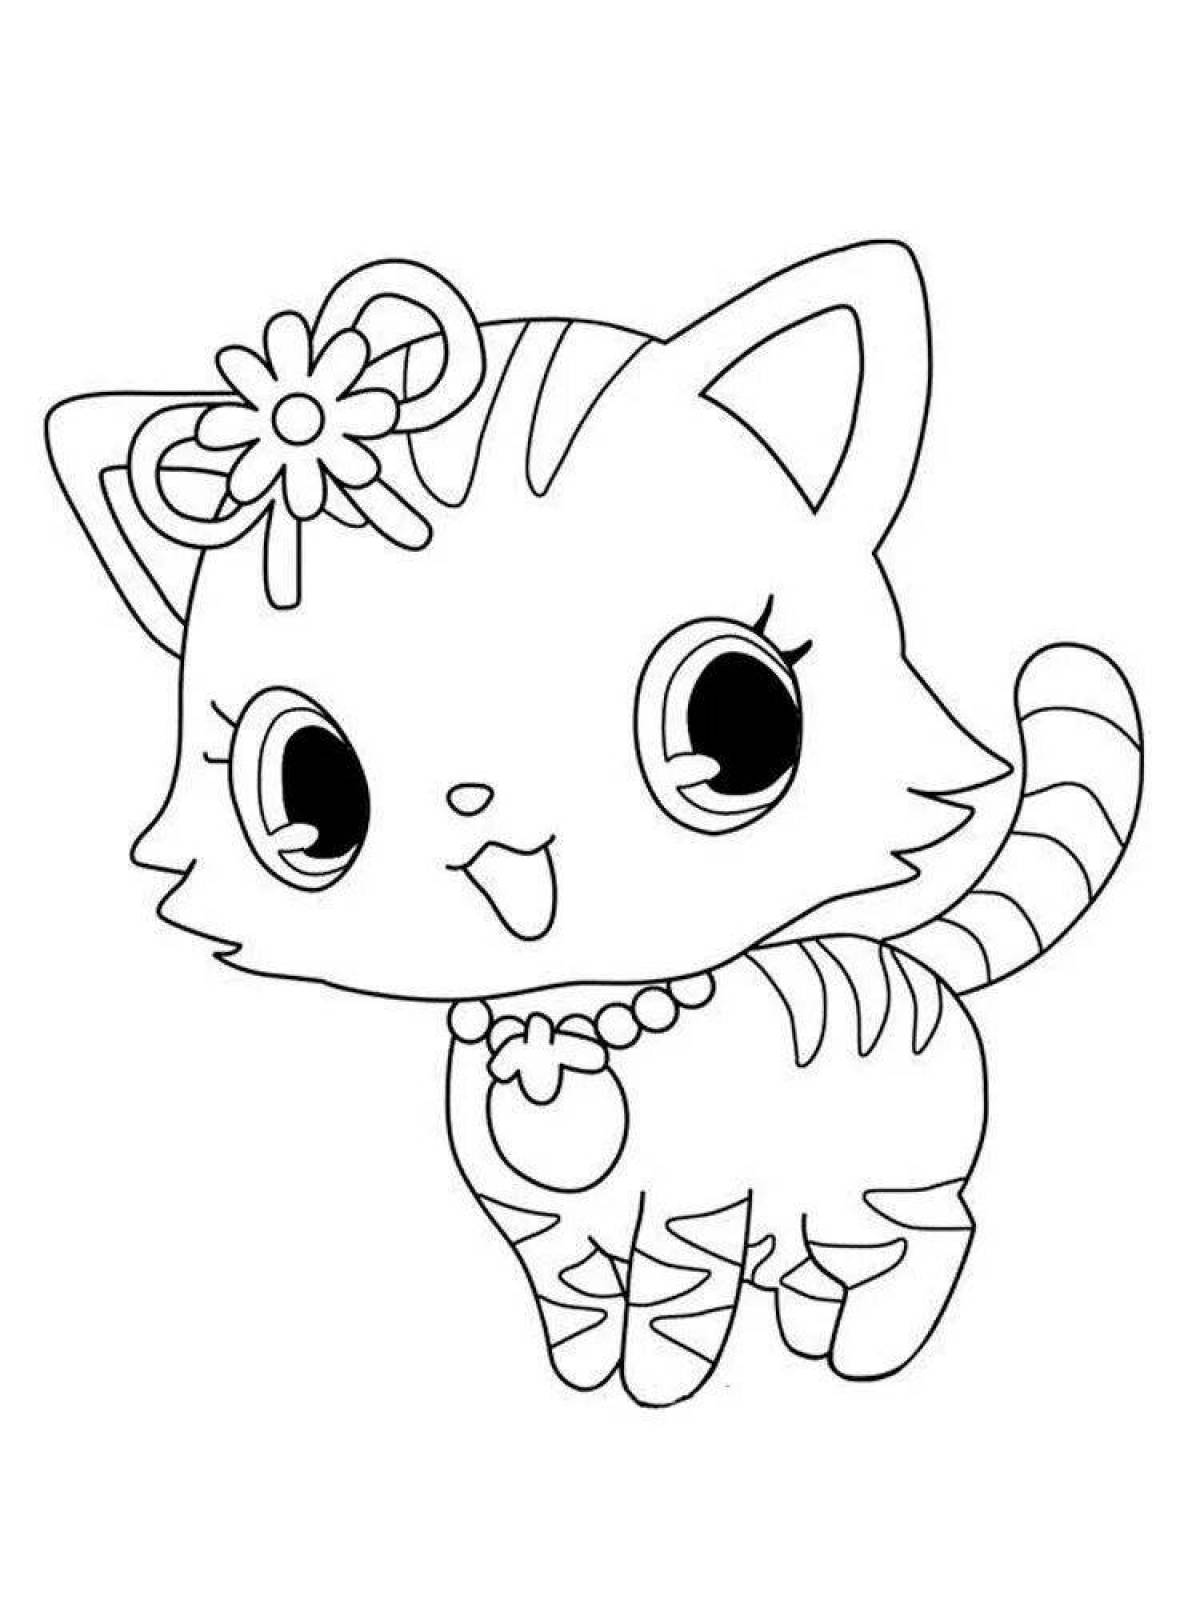 Joyful cute cat coloring book